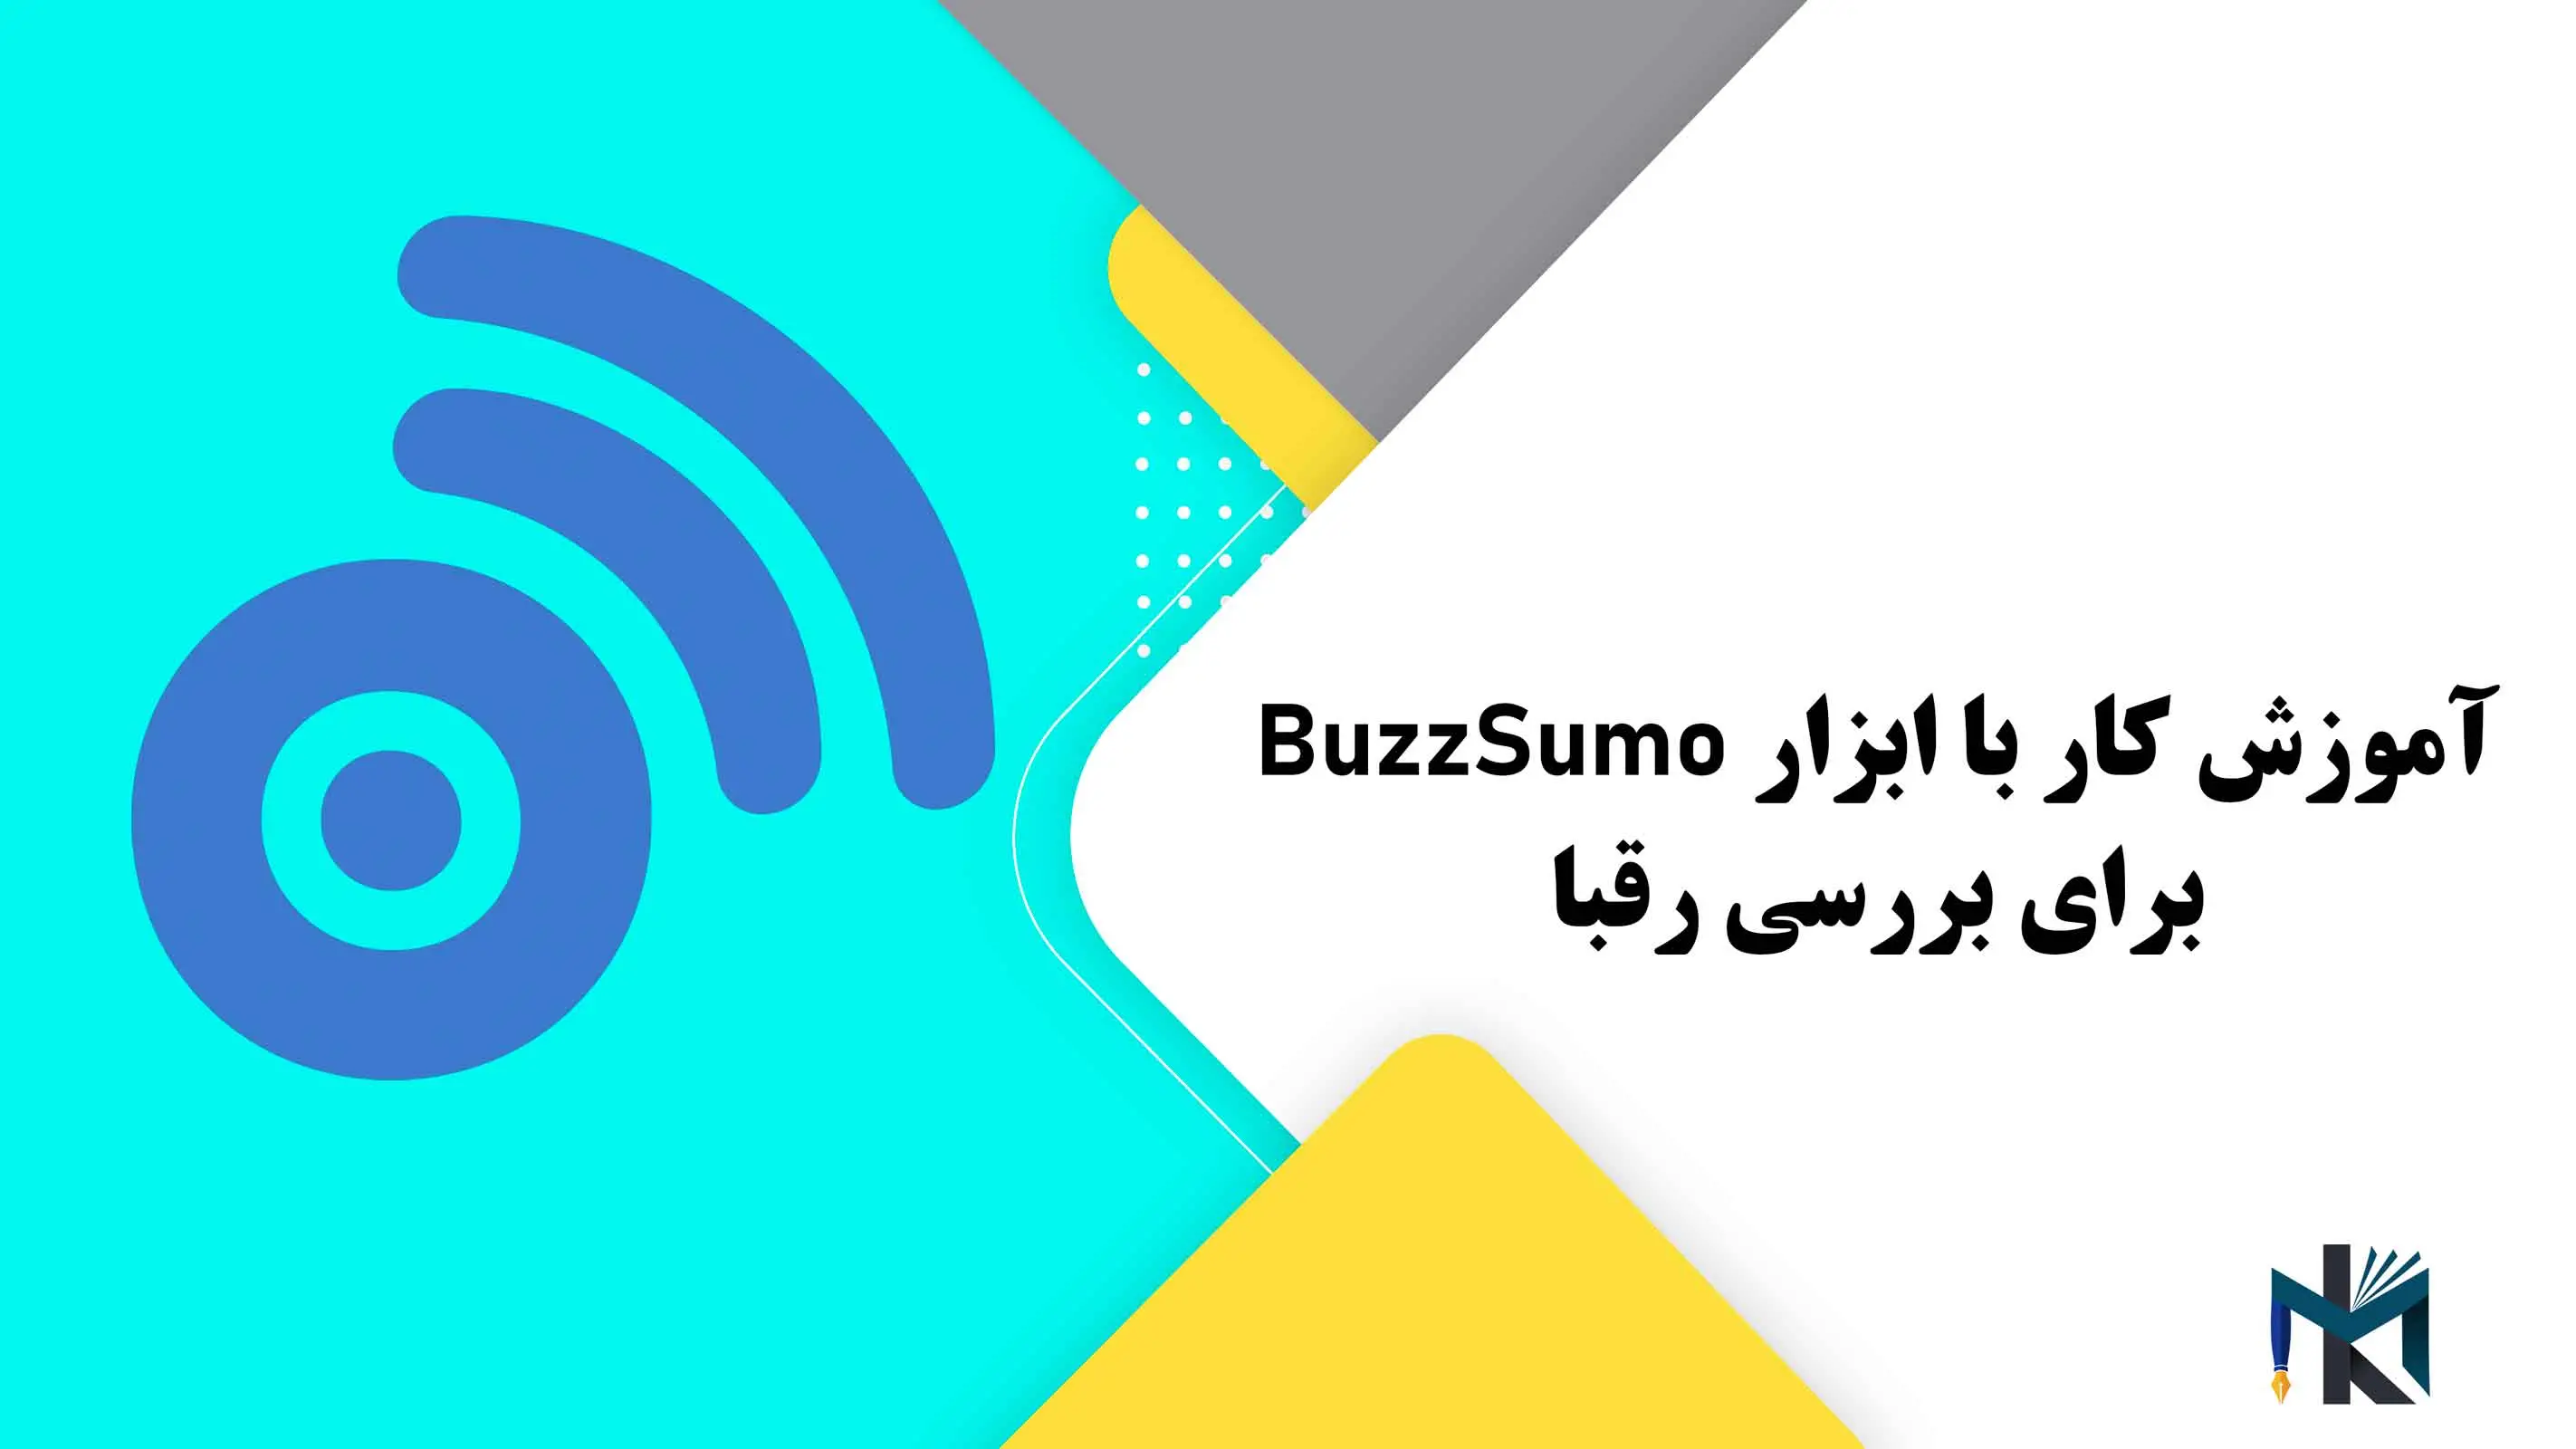 درس هفدهم: آموزش کار با ابزار BuzzSumo برای بررسی رقبا